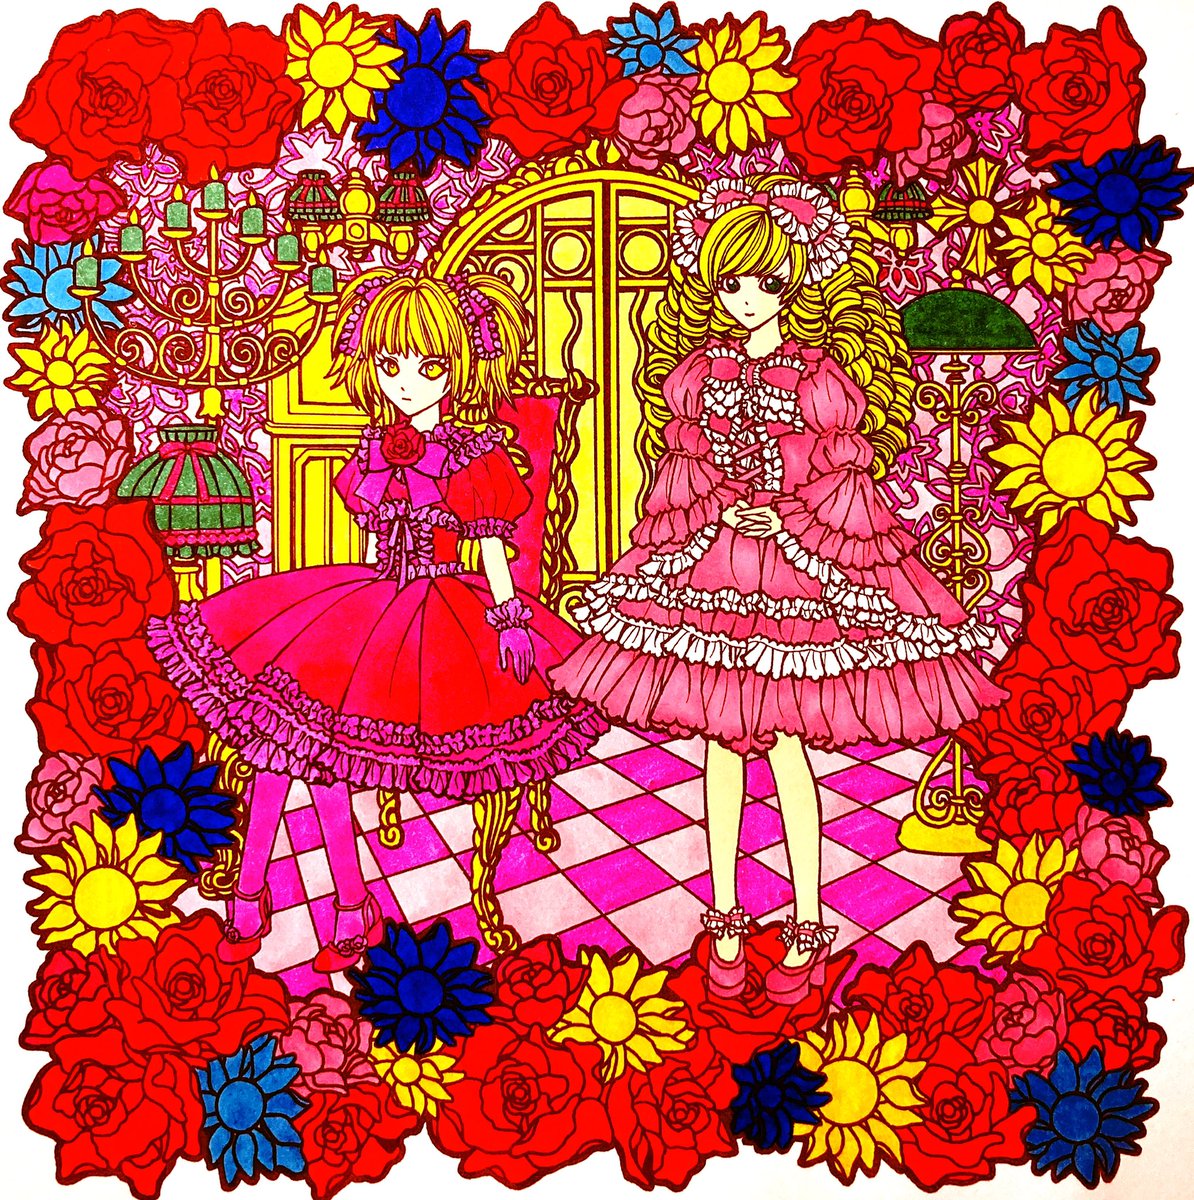 極彩色のゴスロリ手描きイラスト ブログ書きました 壁紙まで手描きで描いてるの 松元美智子の漫画ツイートのイラスト